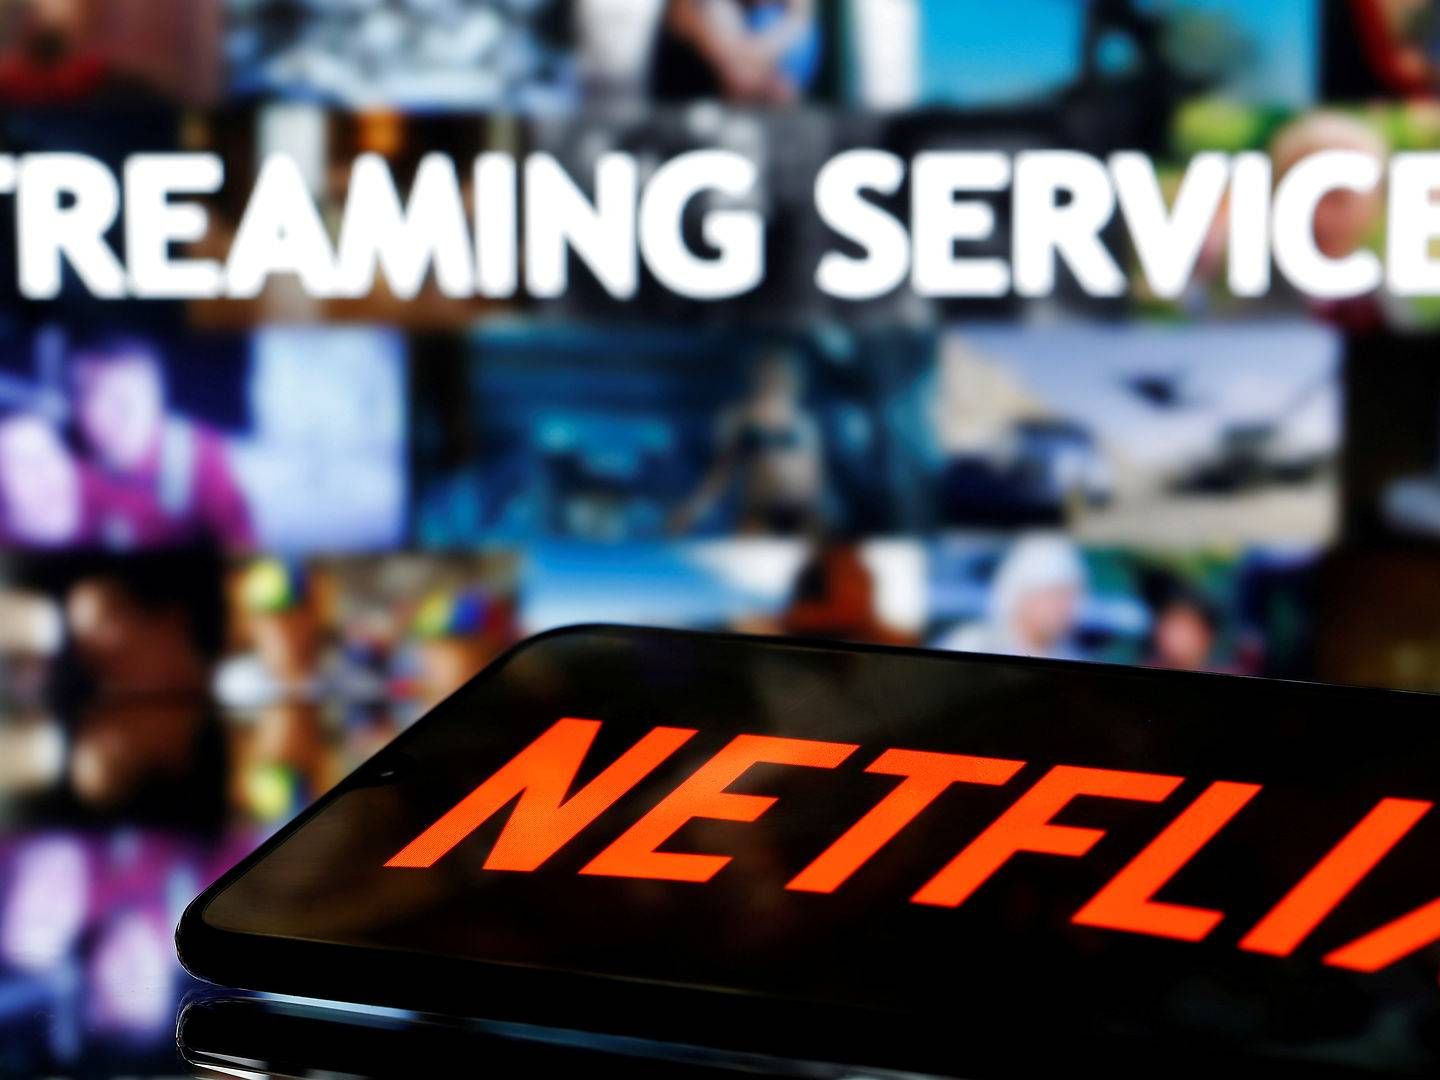 De sigtede har blandt andet solgt billige adgange til streamingtjenester som Netflix, HBO og Amazon. | Foto: Dado Ruvic/Reuters/Ritzau Scanpix